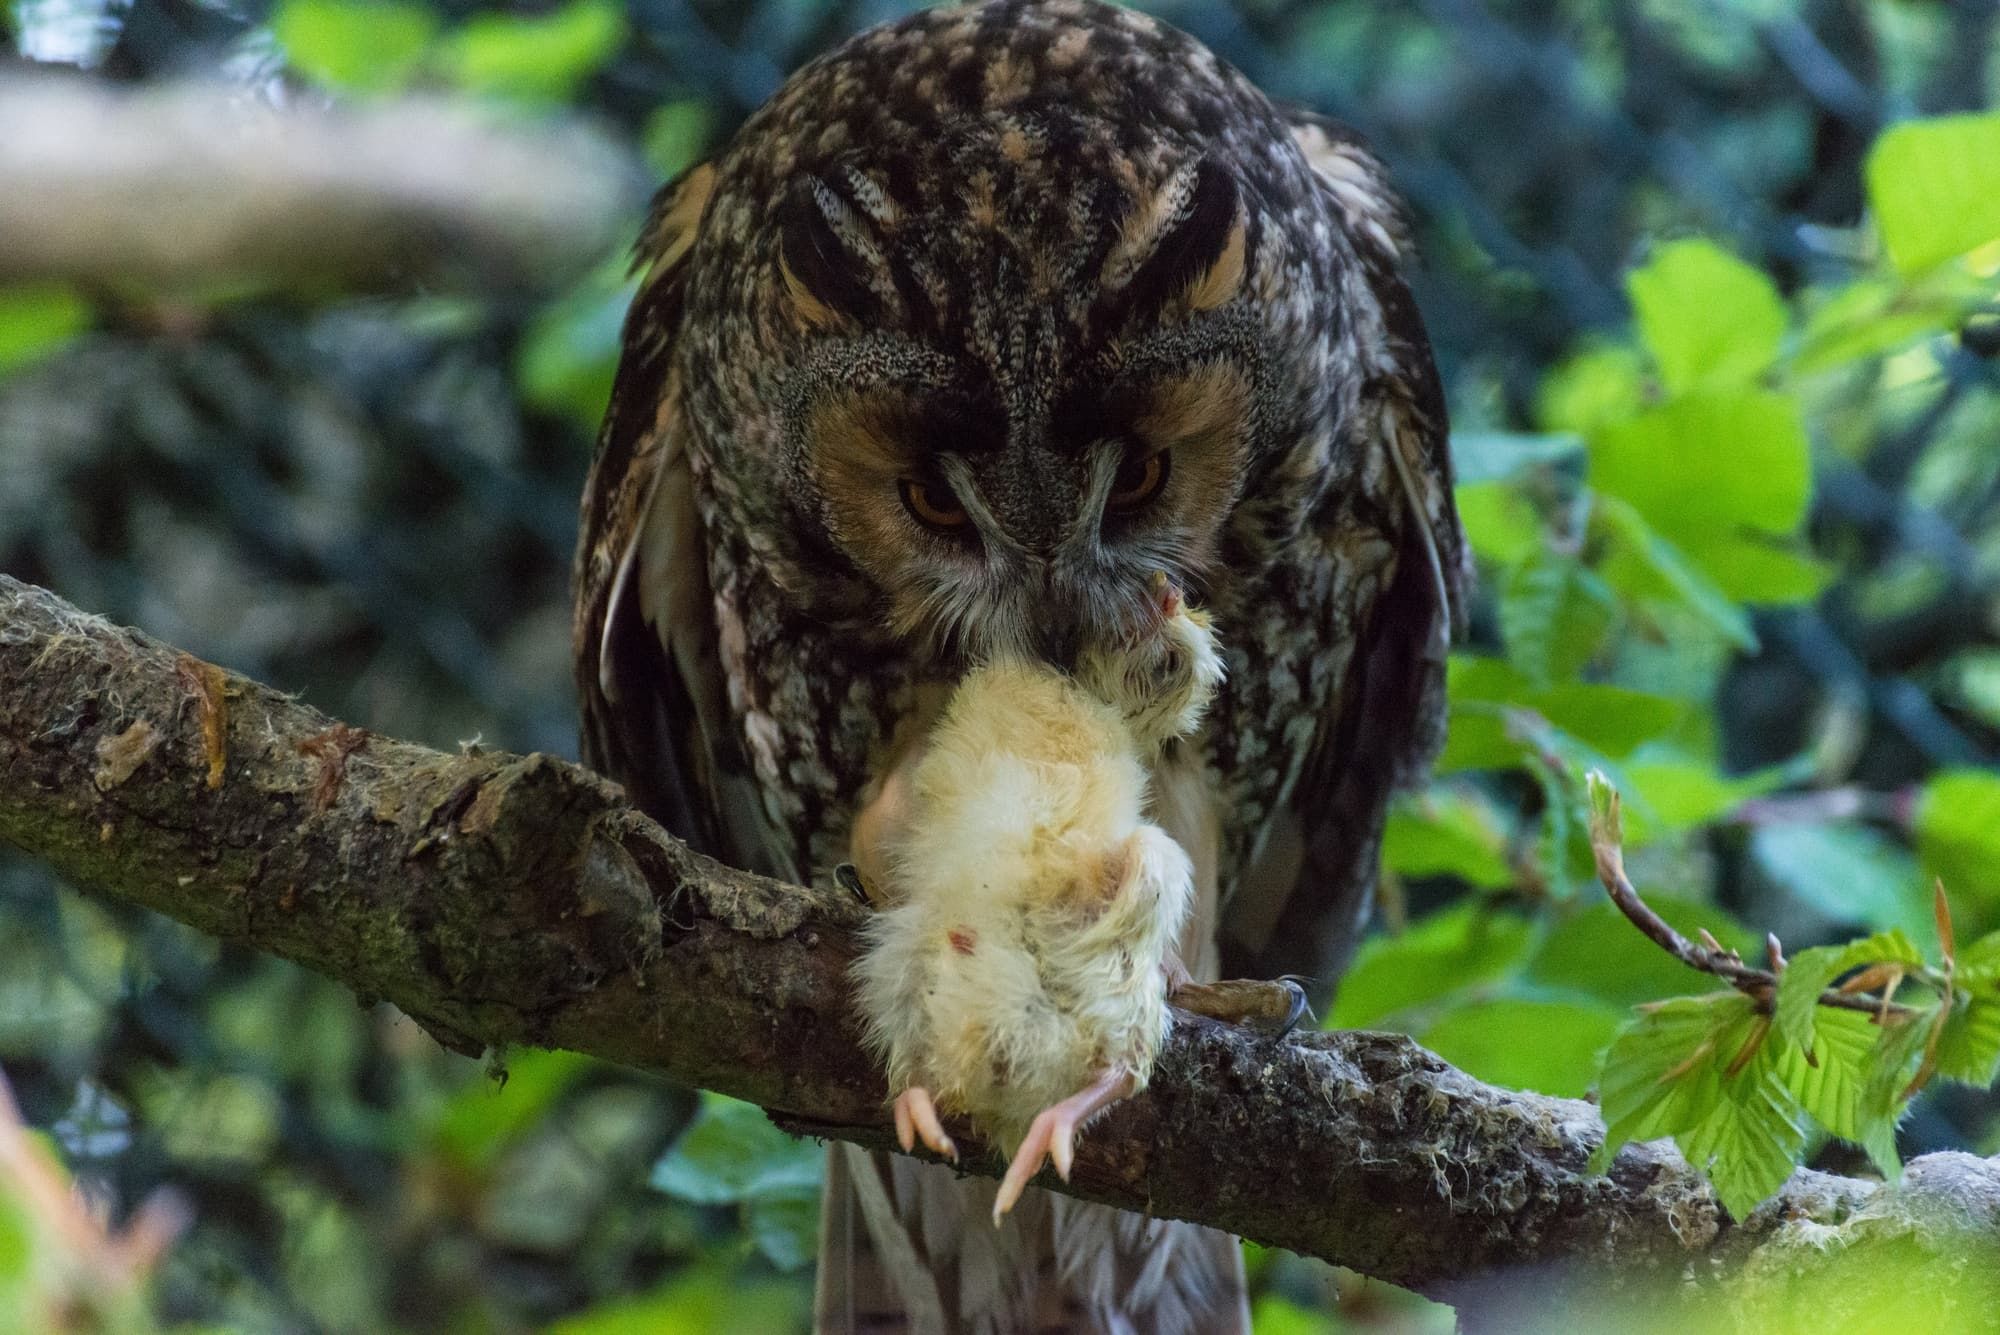 An owl eats a little chick on a branch.